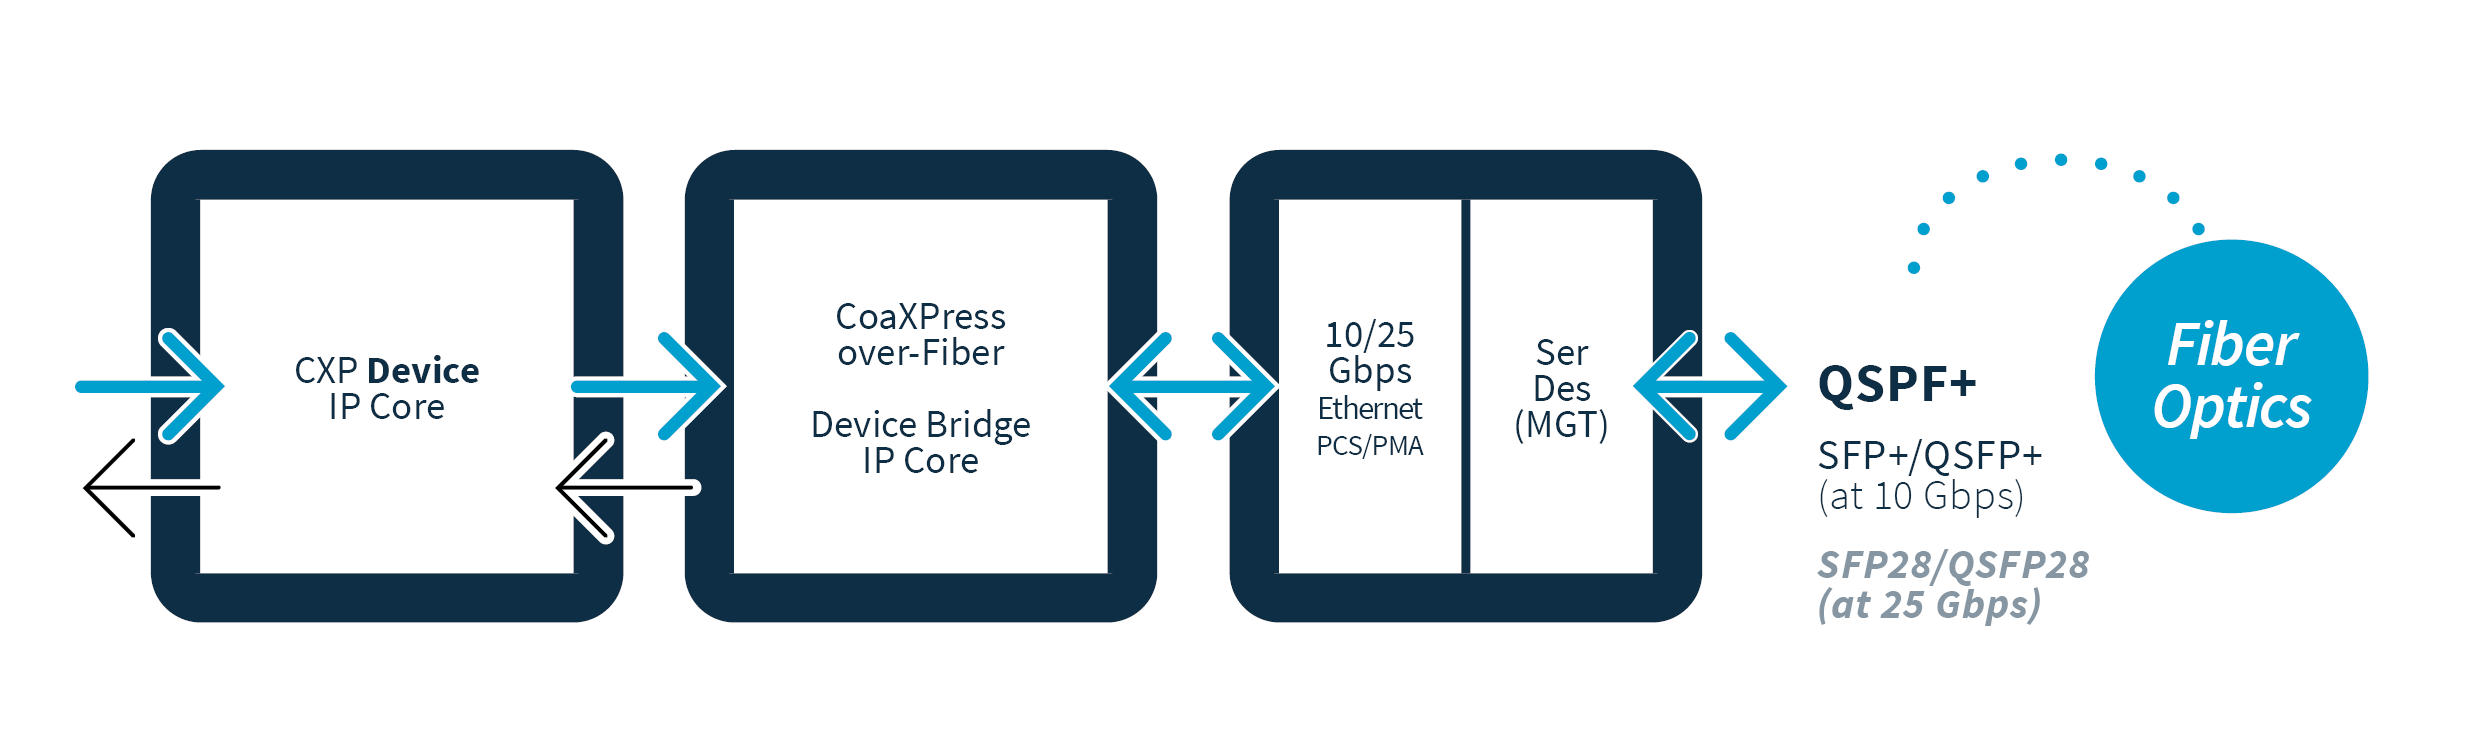 CoaXPress-over-Fiber 桥接 IP 核说明